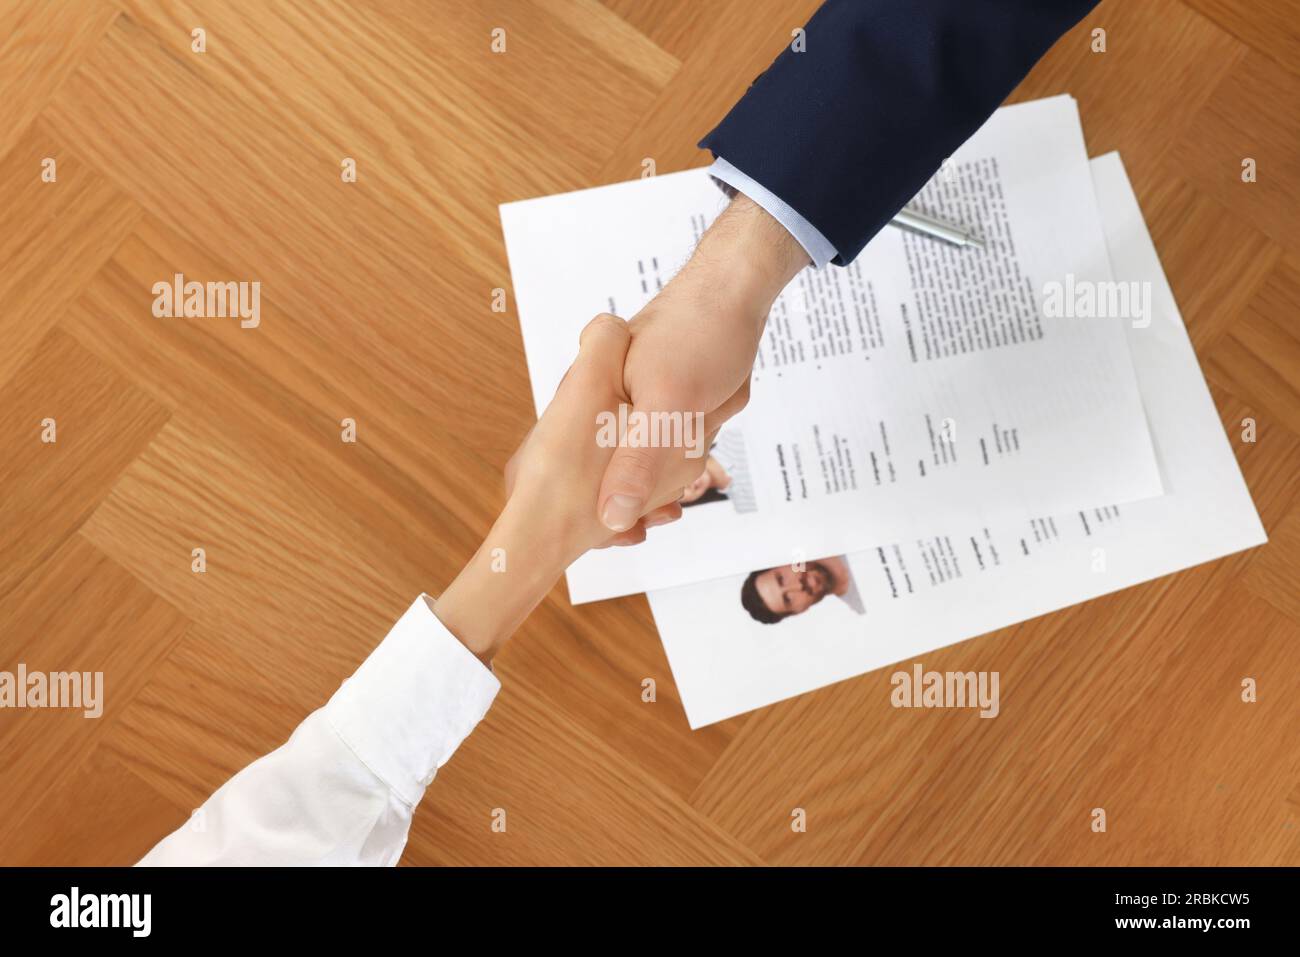 Gestionnaire des ressources humaines serrant la main avec le candidat pendant l'entretien d'embauche à la table en bois, vue de dessus Banque D'Images